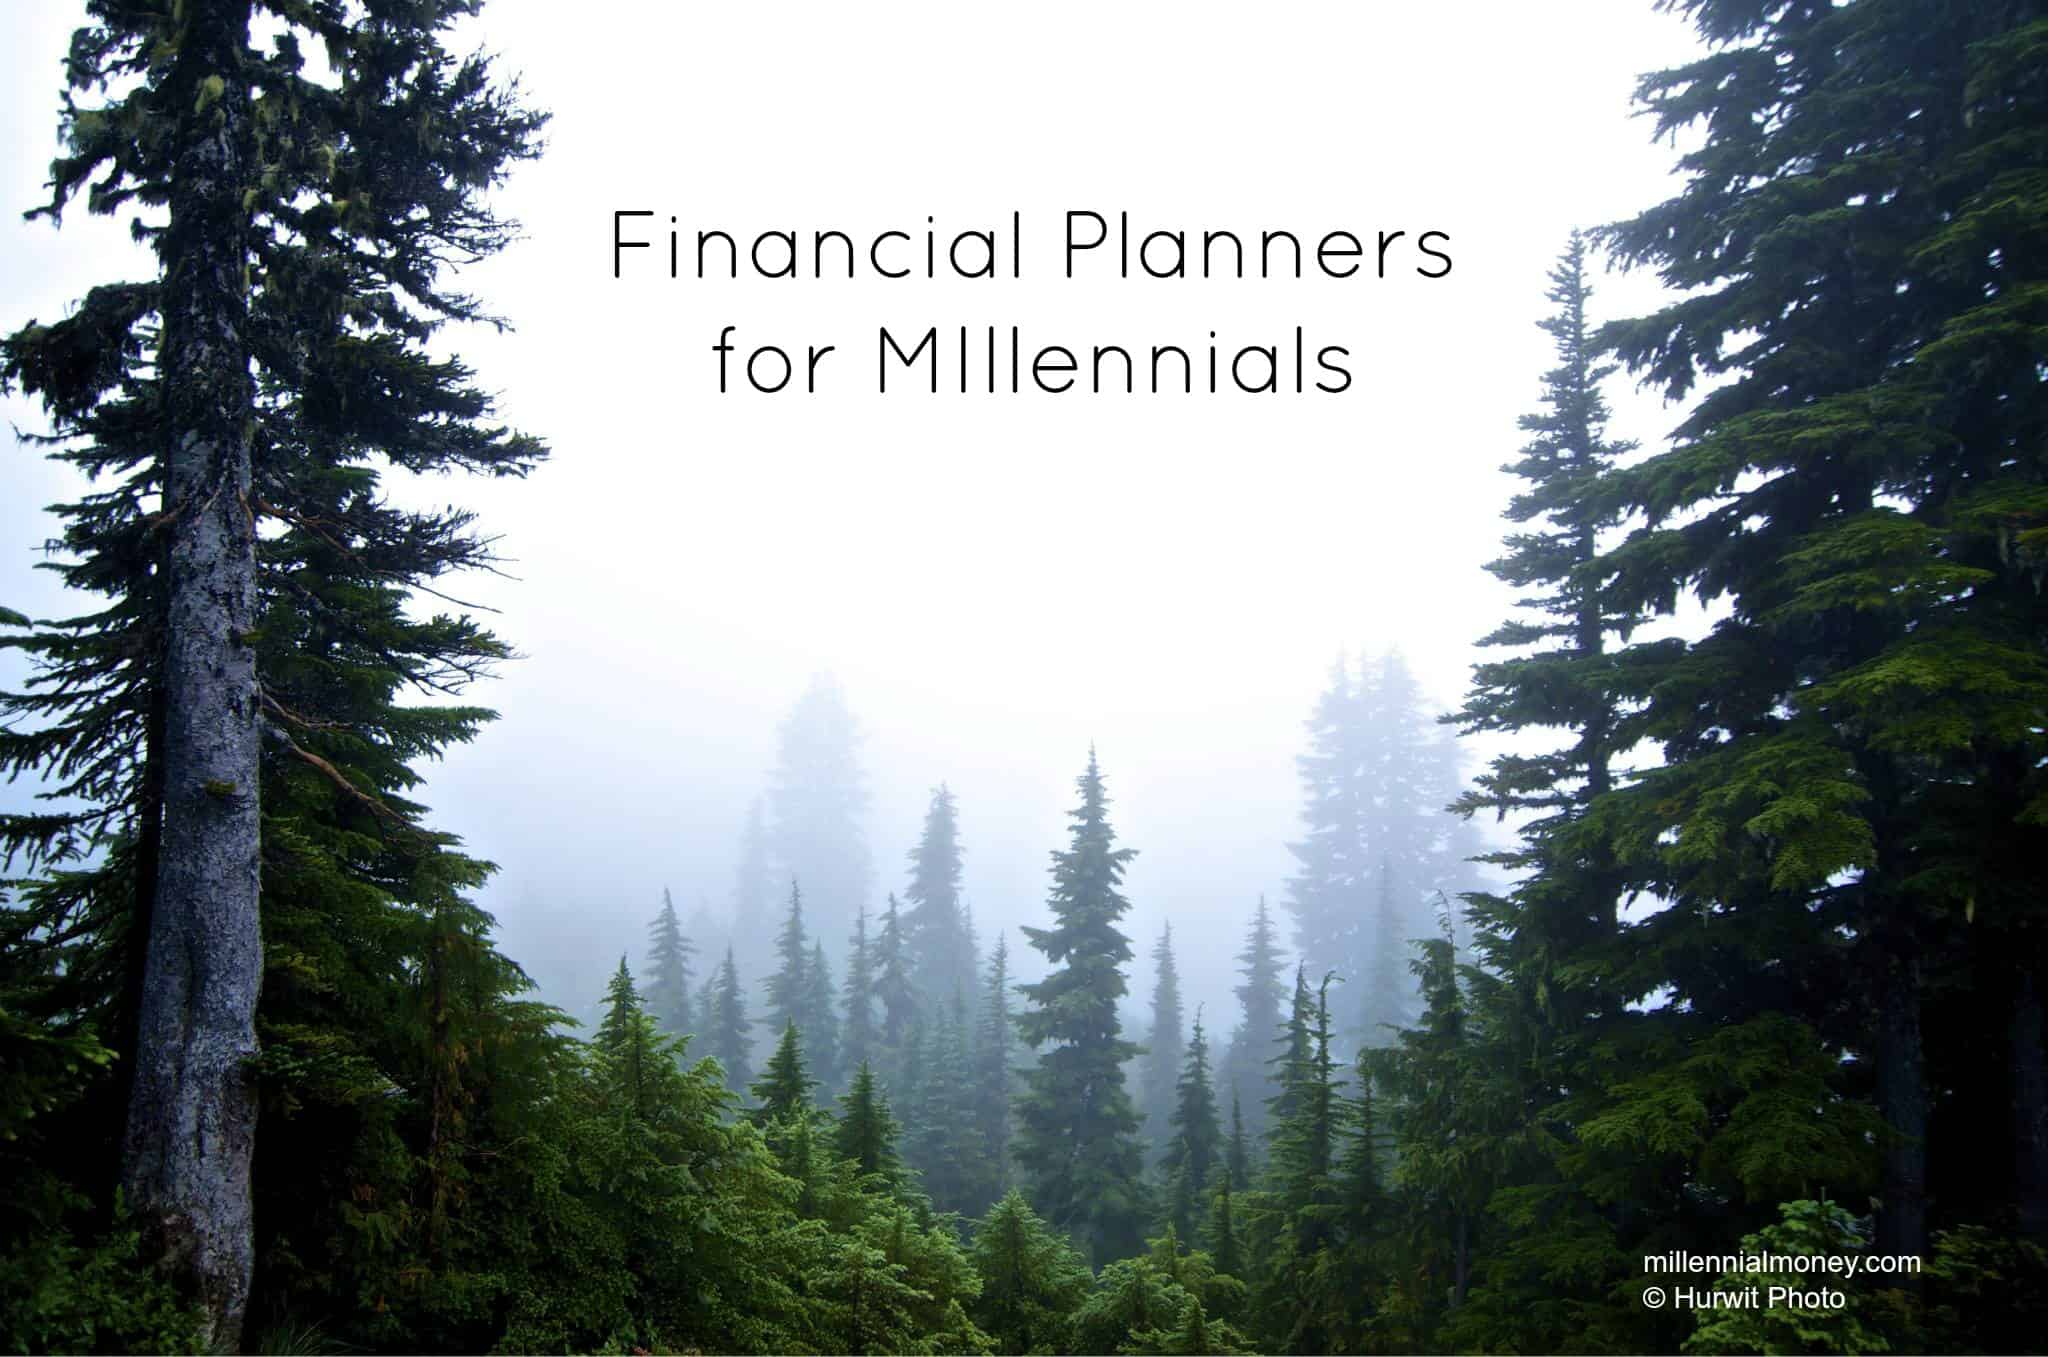 Financial Planners for Millennials